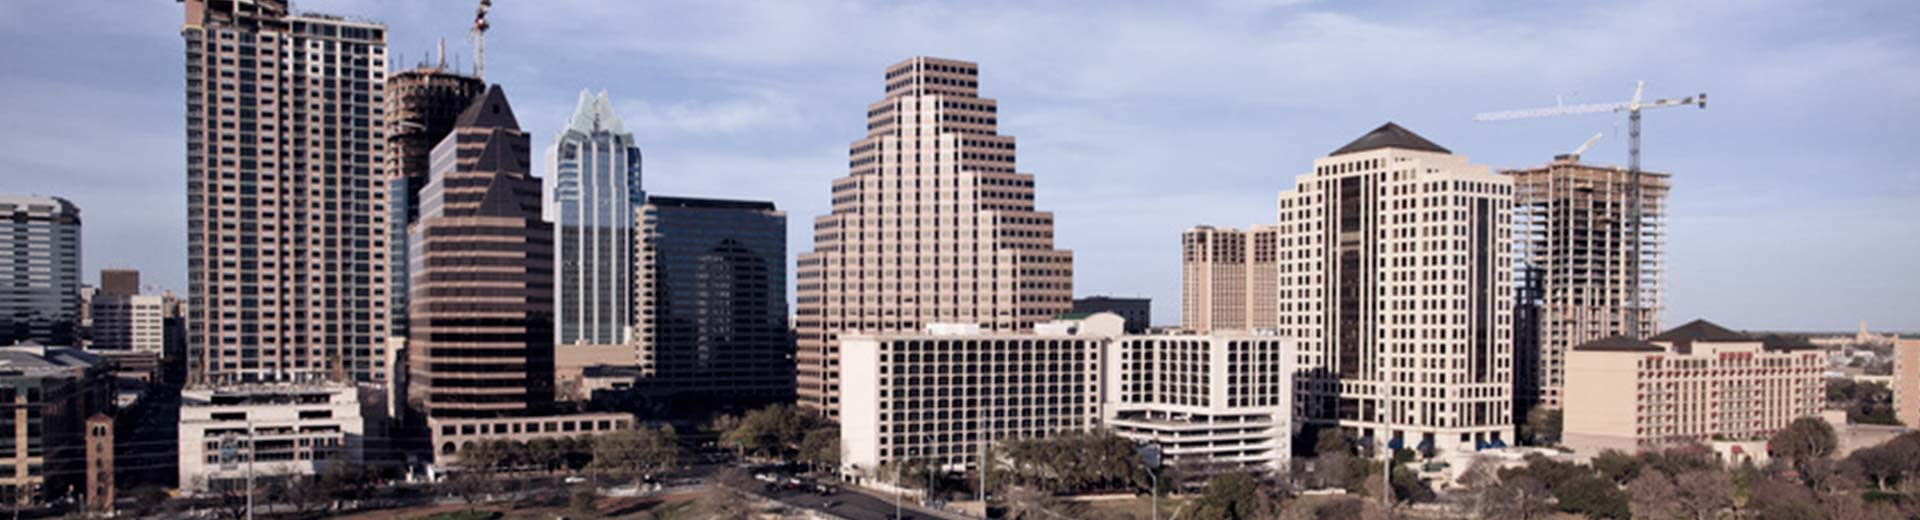 Cielo nublado con una vista frontal de los muchos edificios en el centro de la ciudad de Austin.